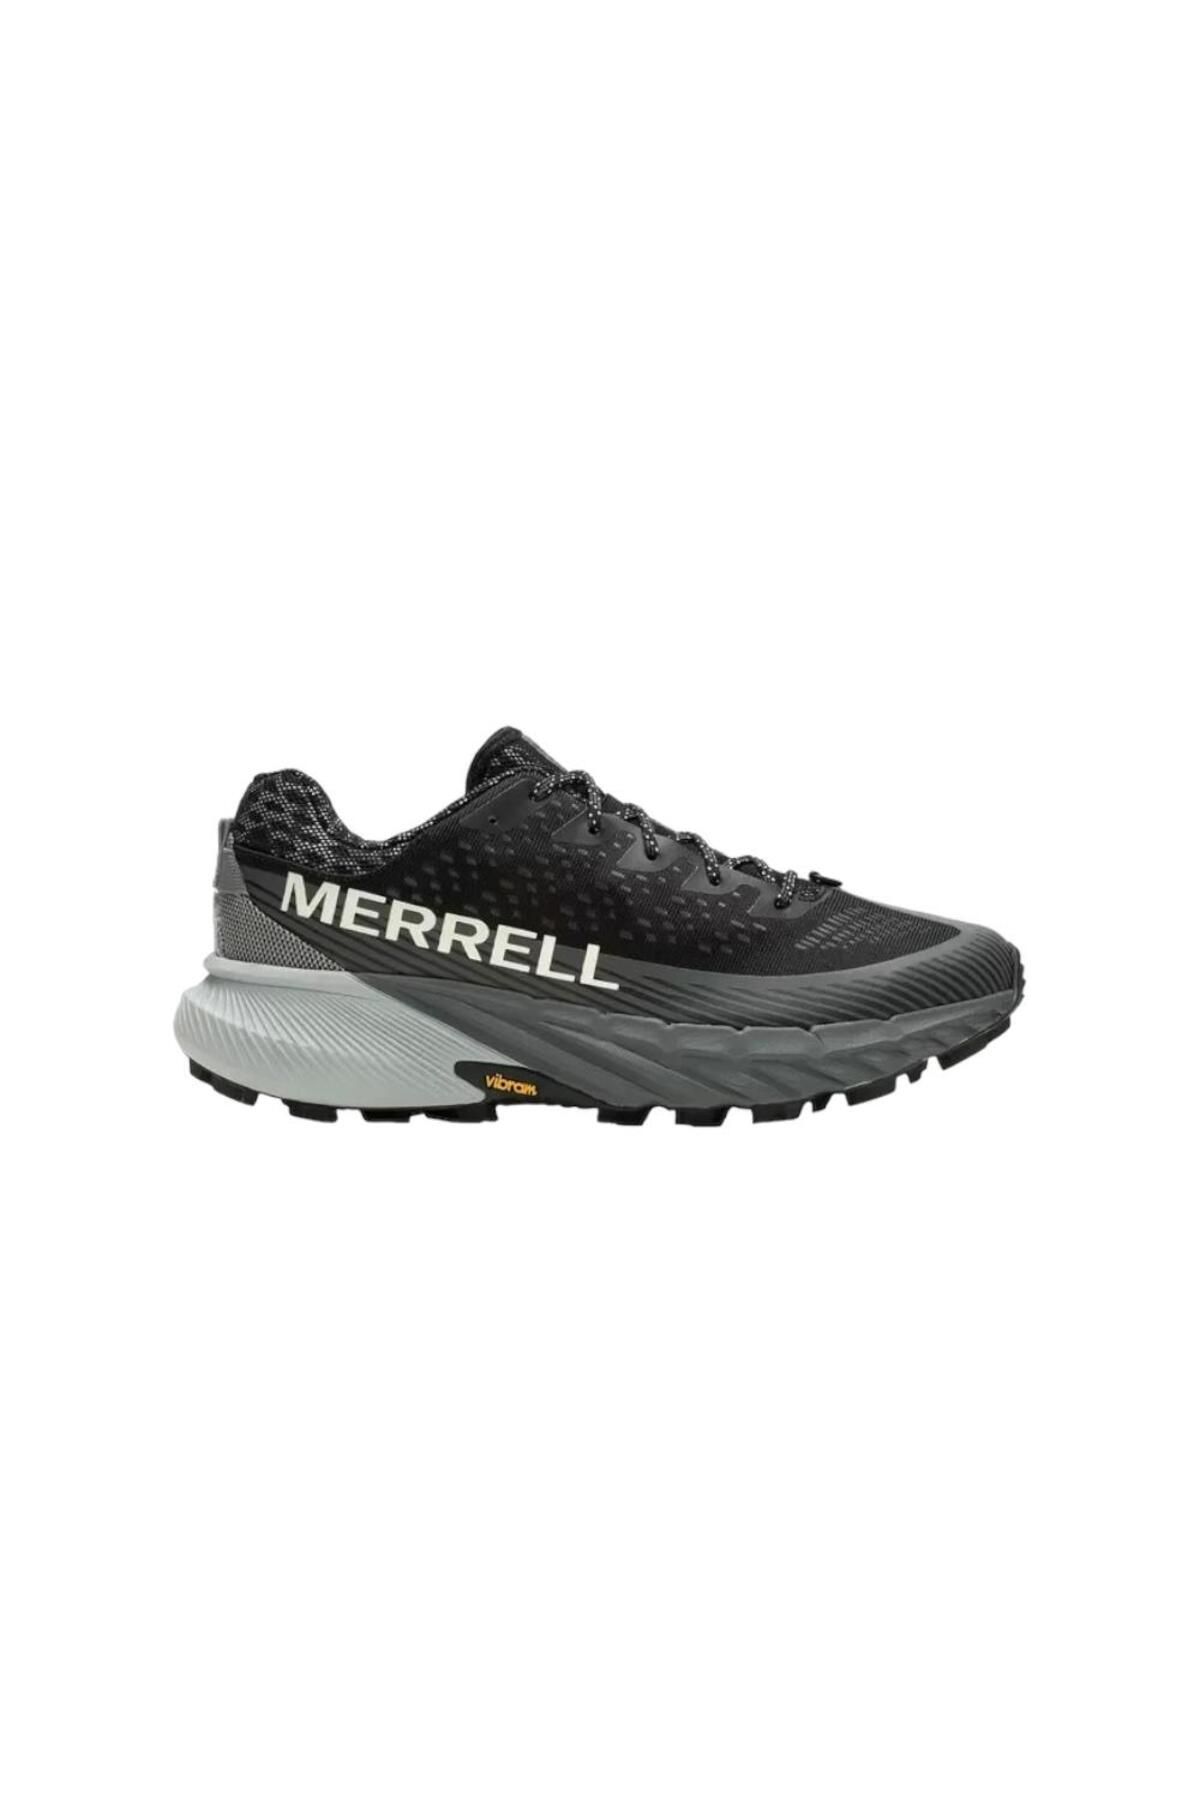 Merrell Agility Peak 5 Vibram Tabanlı Kadın Spor Ayakkabı J067808